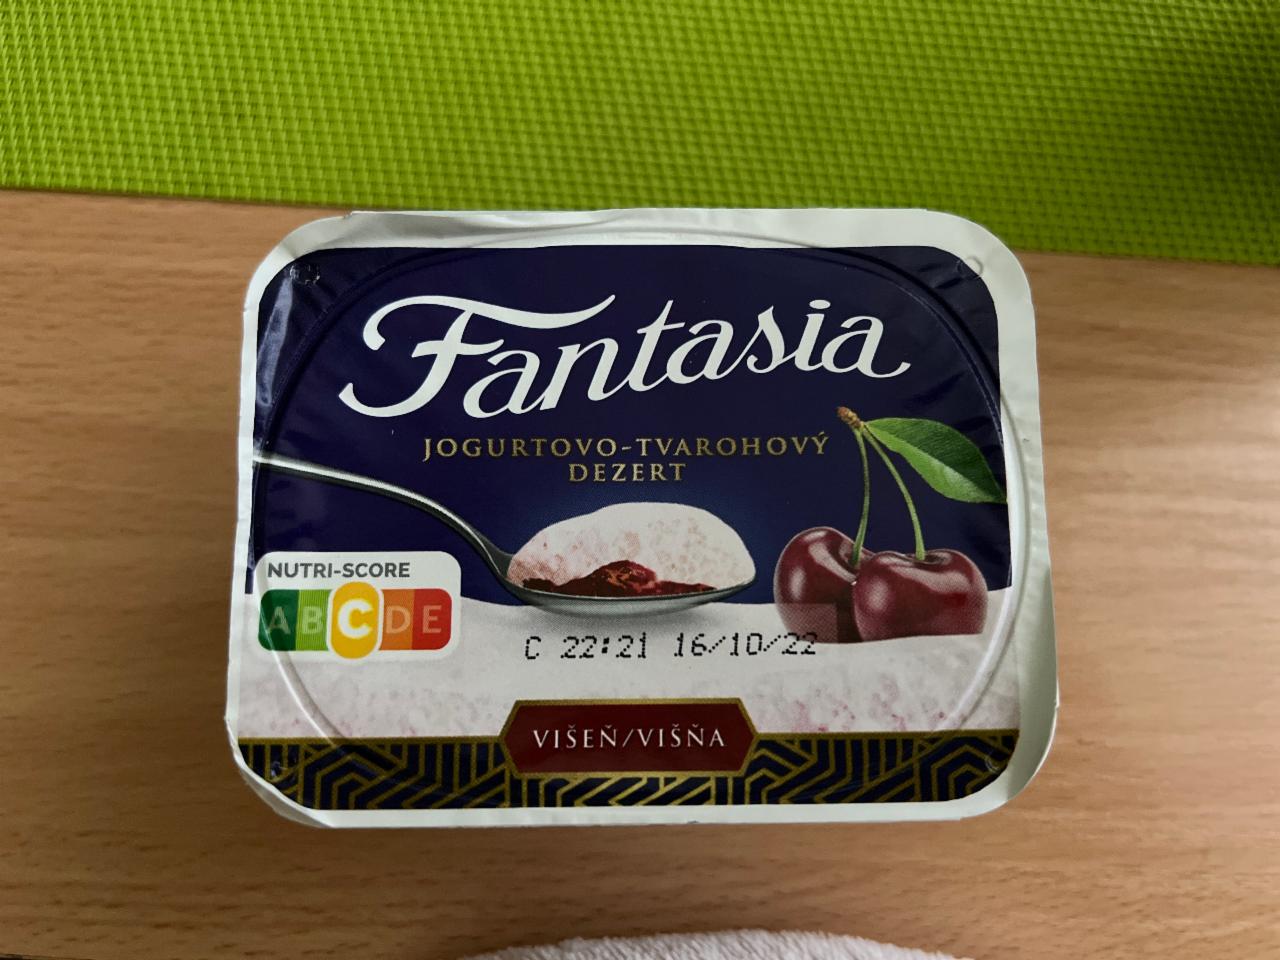 Фото - йогуртово-творожный десерт с вишней Fantasia